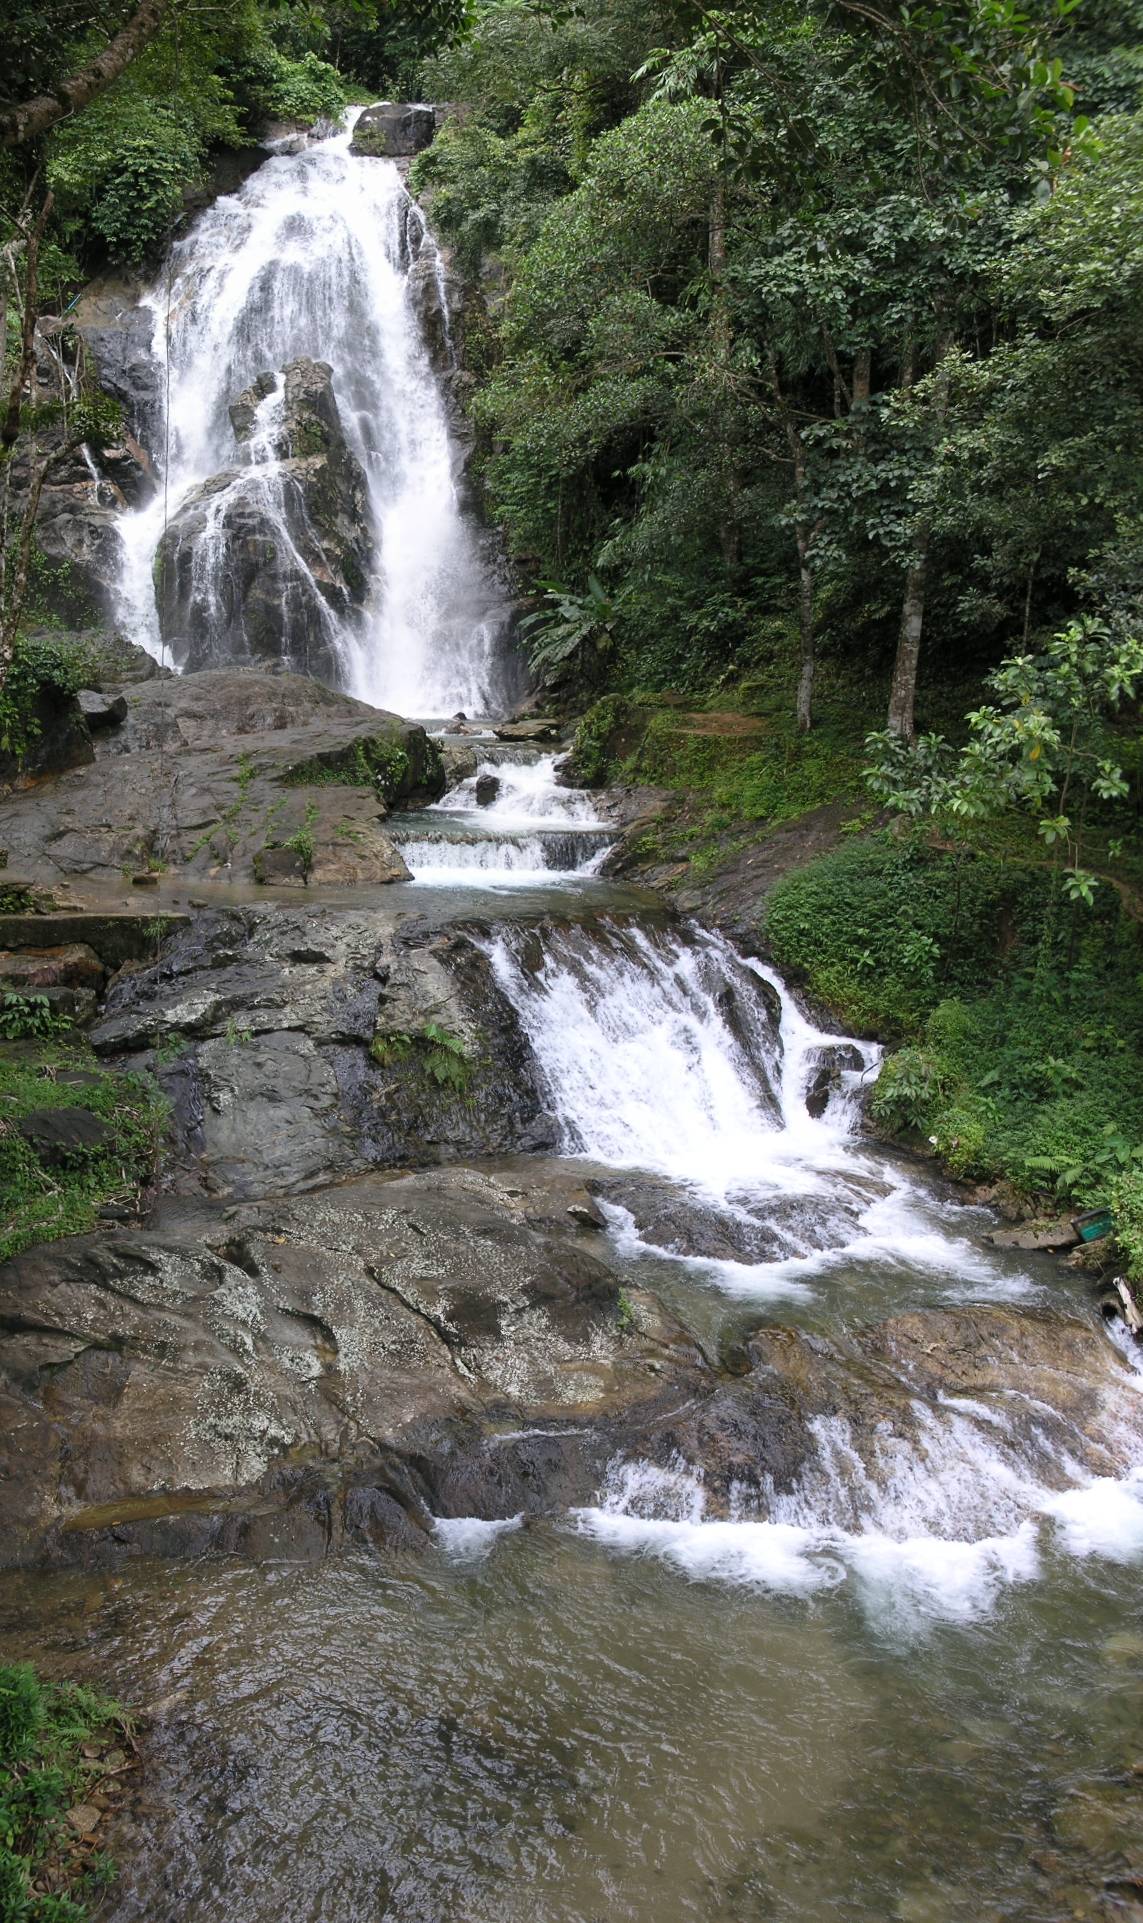 Punyaban Waterfall